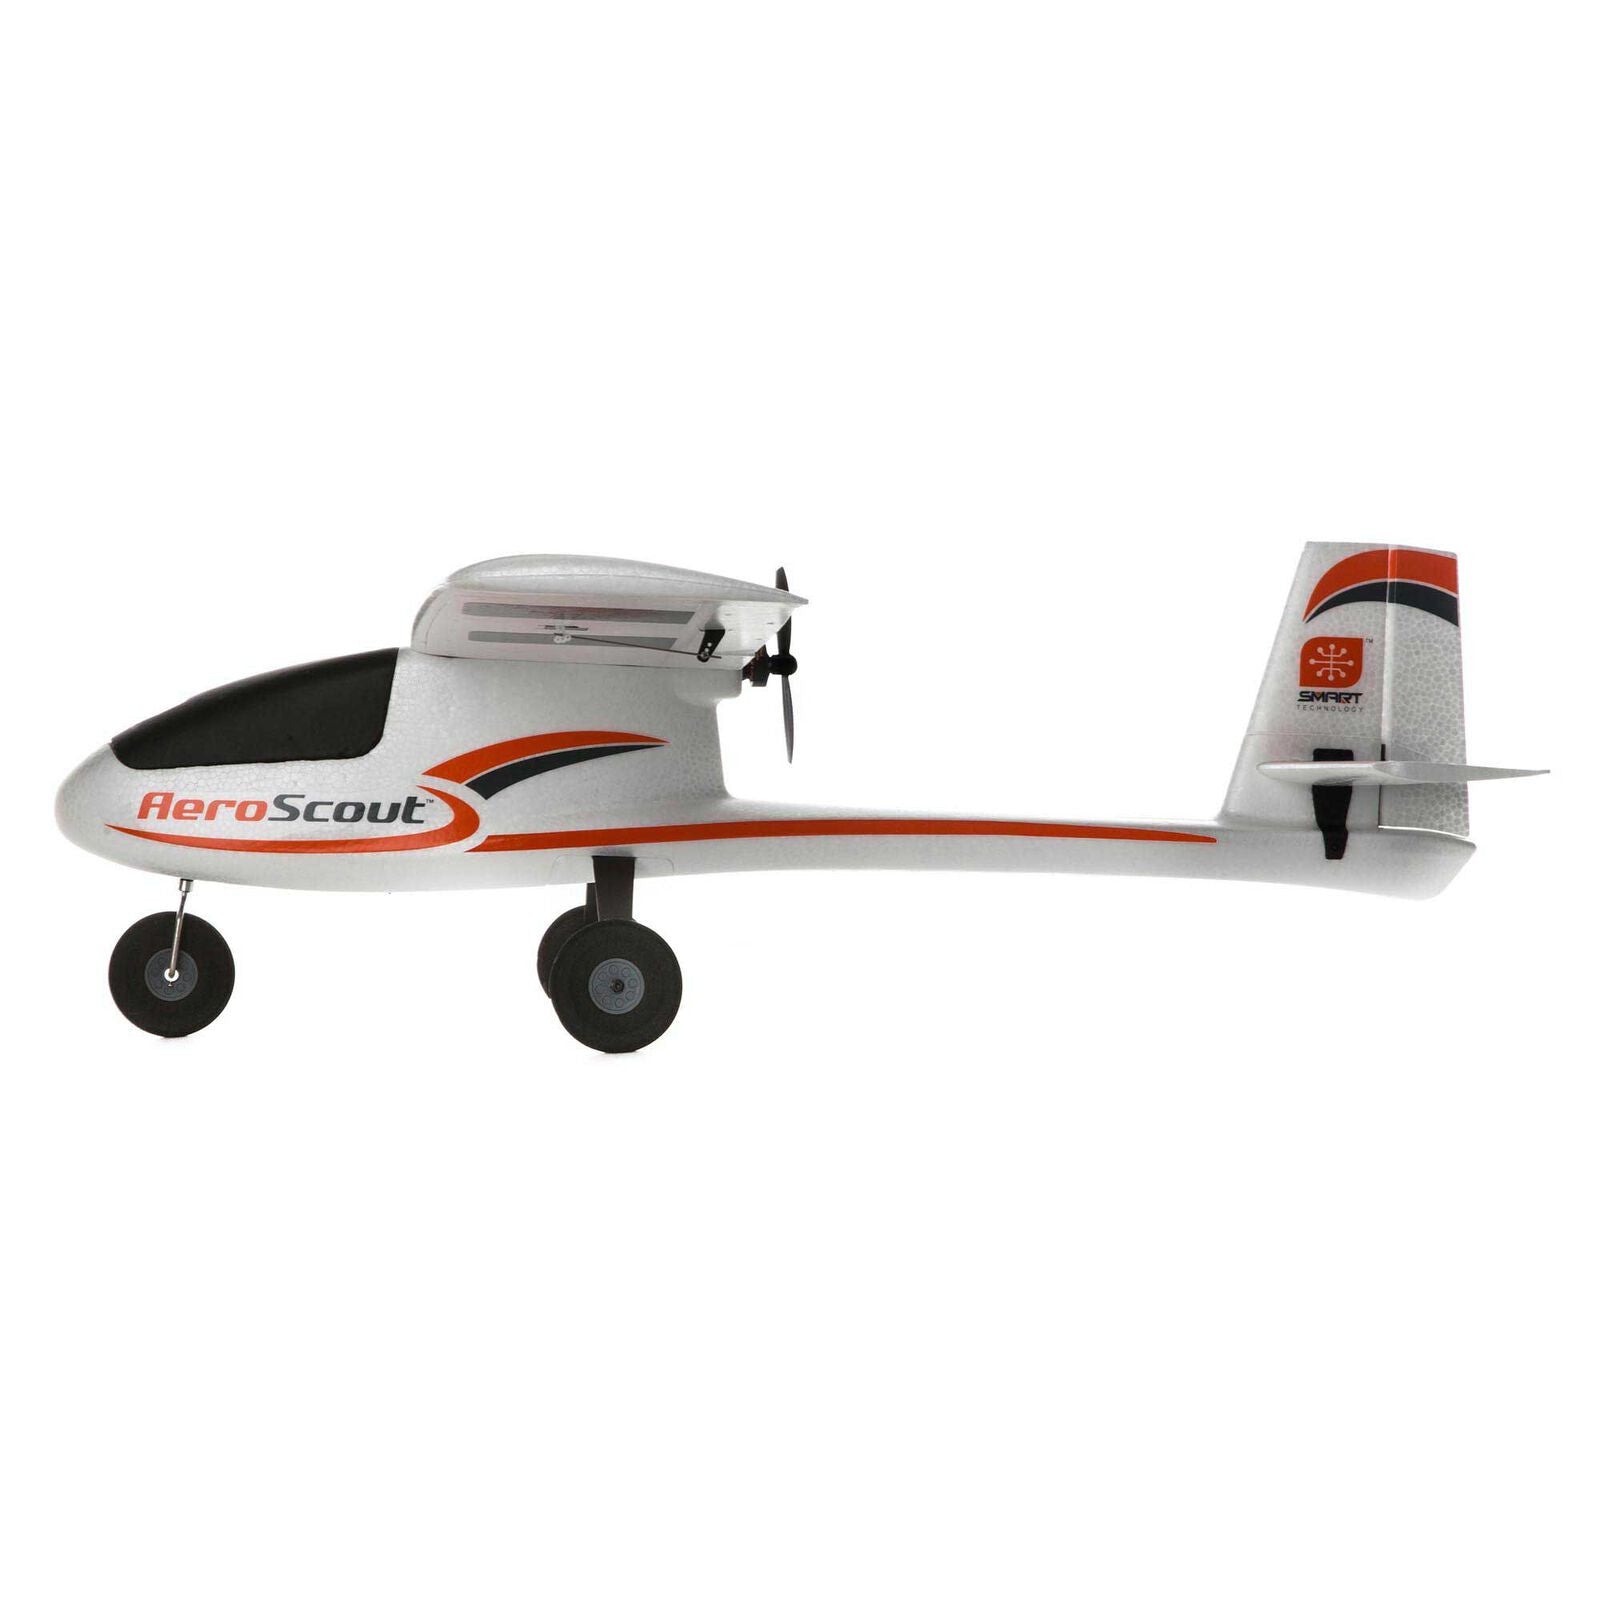 HobbyZone Avion AeroScout S 2 1.1m RTF Basic Safe HBZ380001